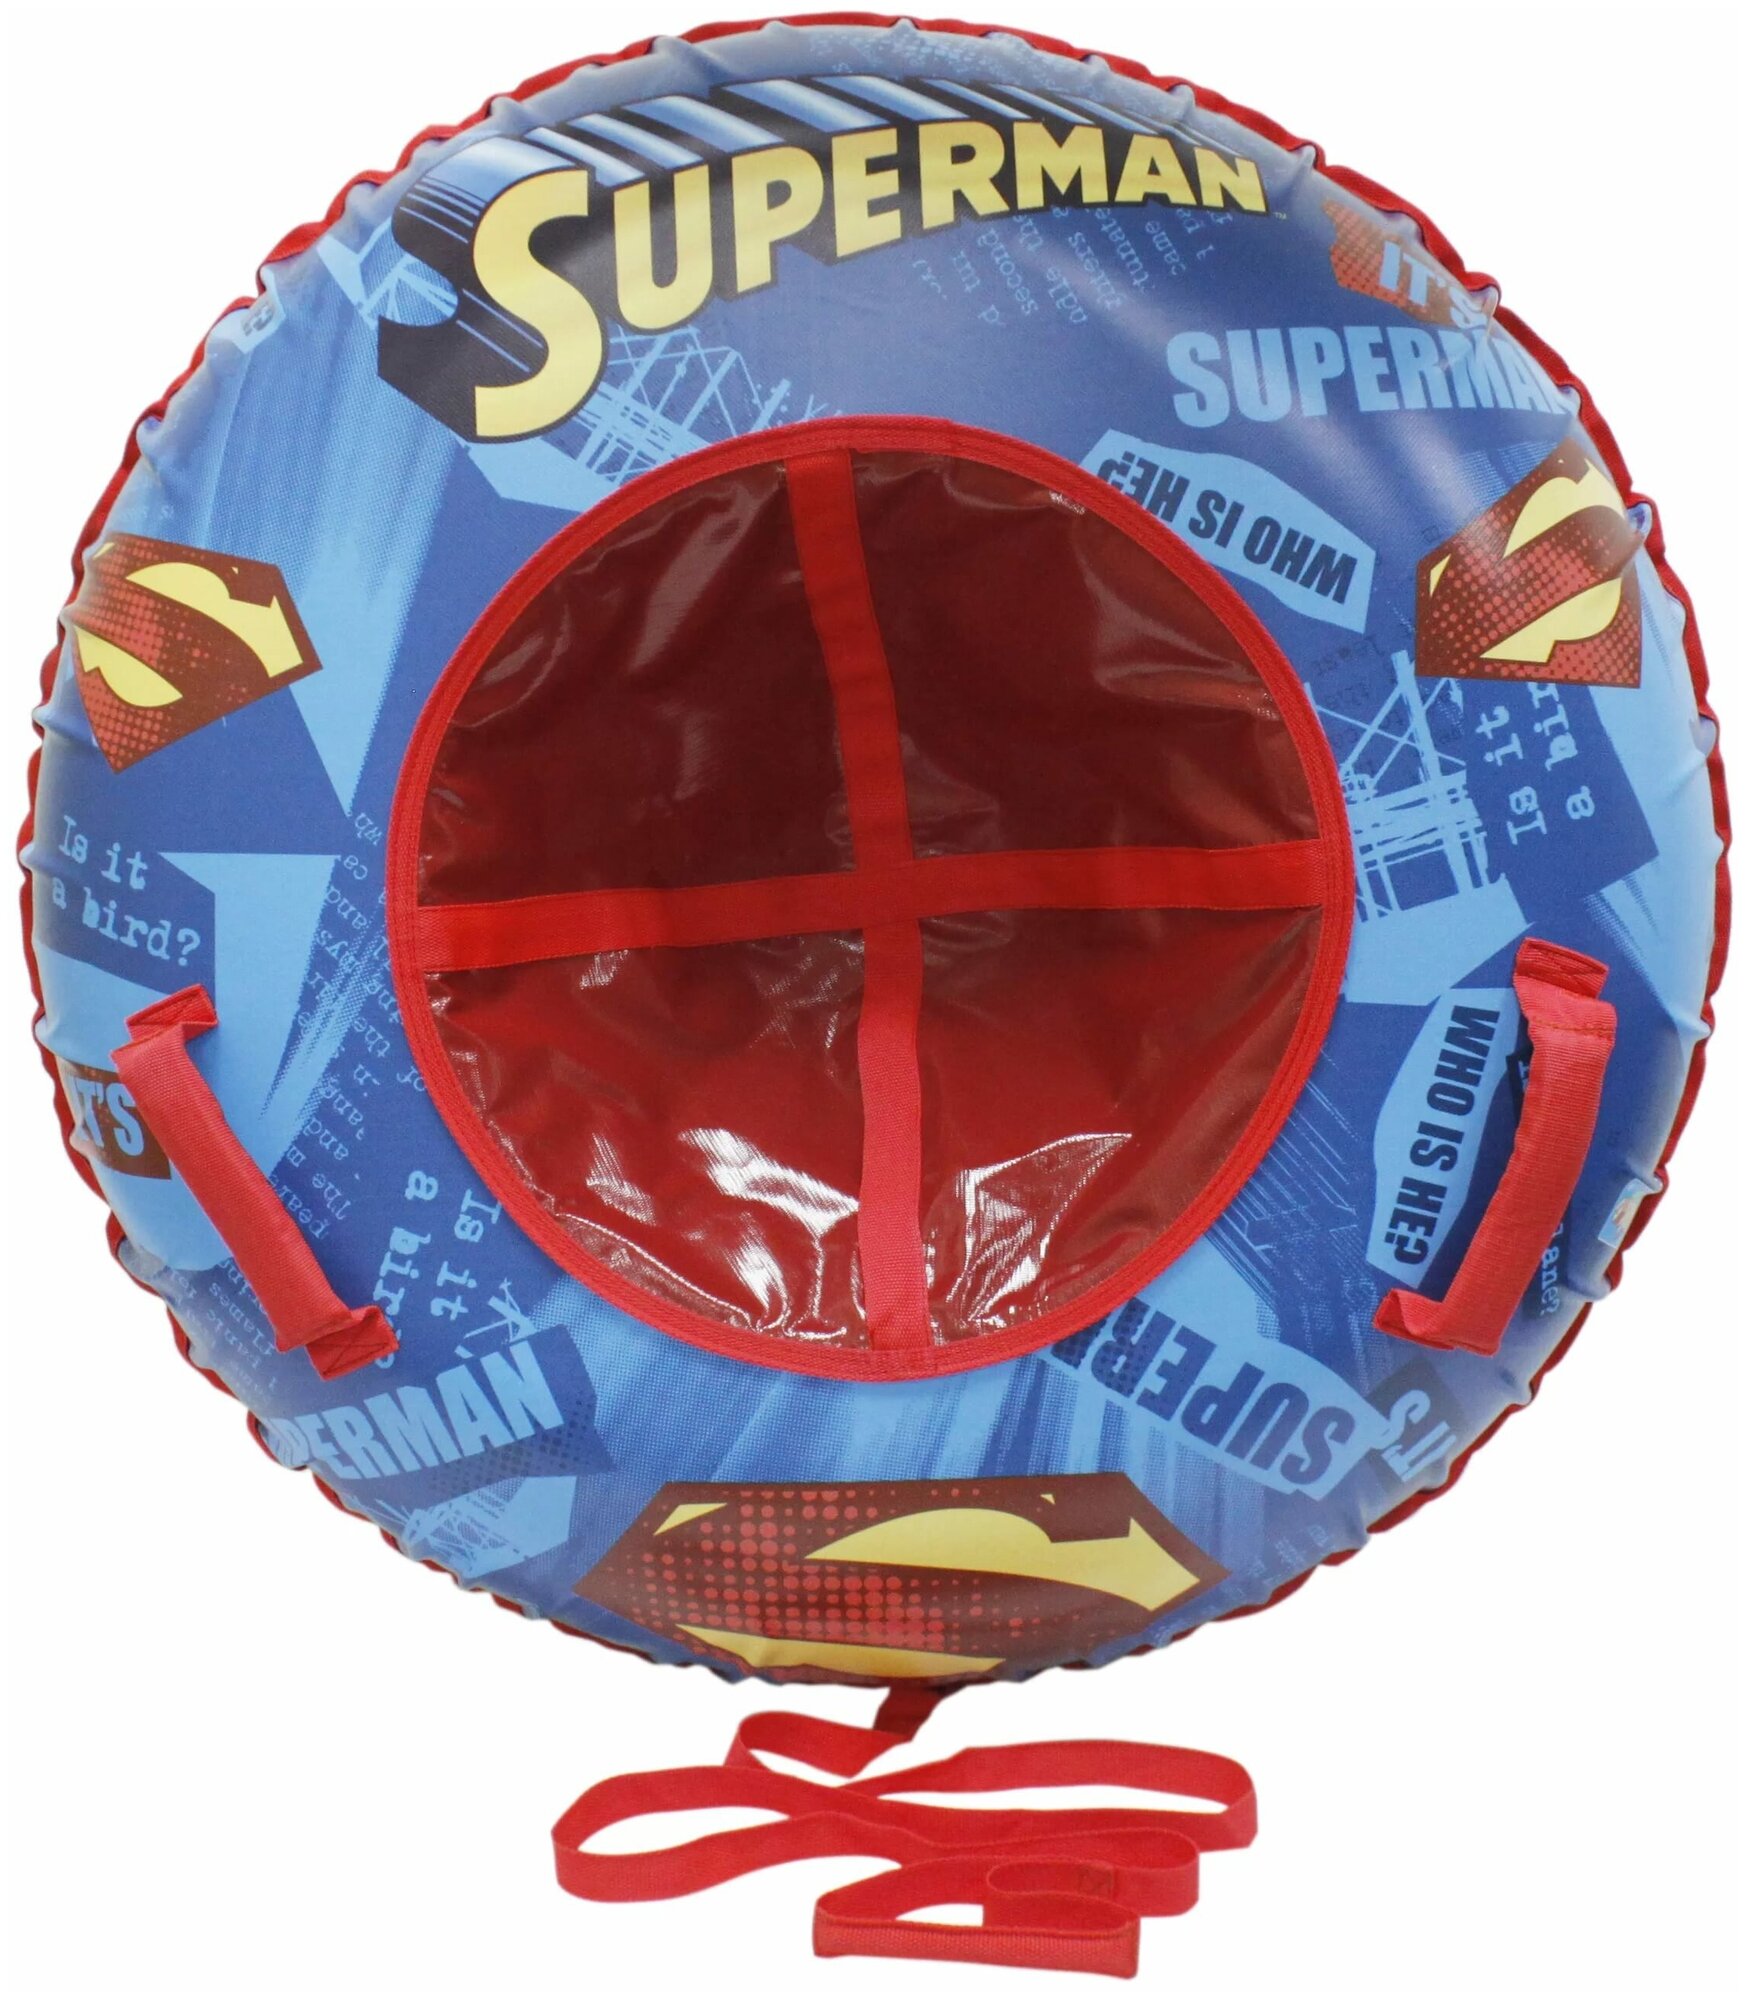 Тюбинг 1Toy Супермен надувные сани (материал глянцевый пвх) 100 см Т10468